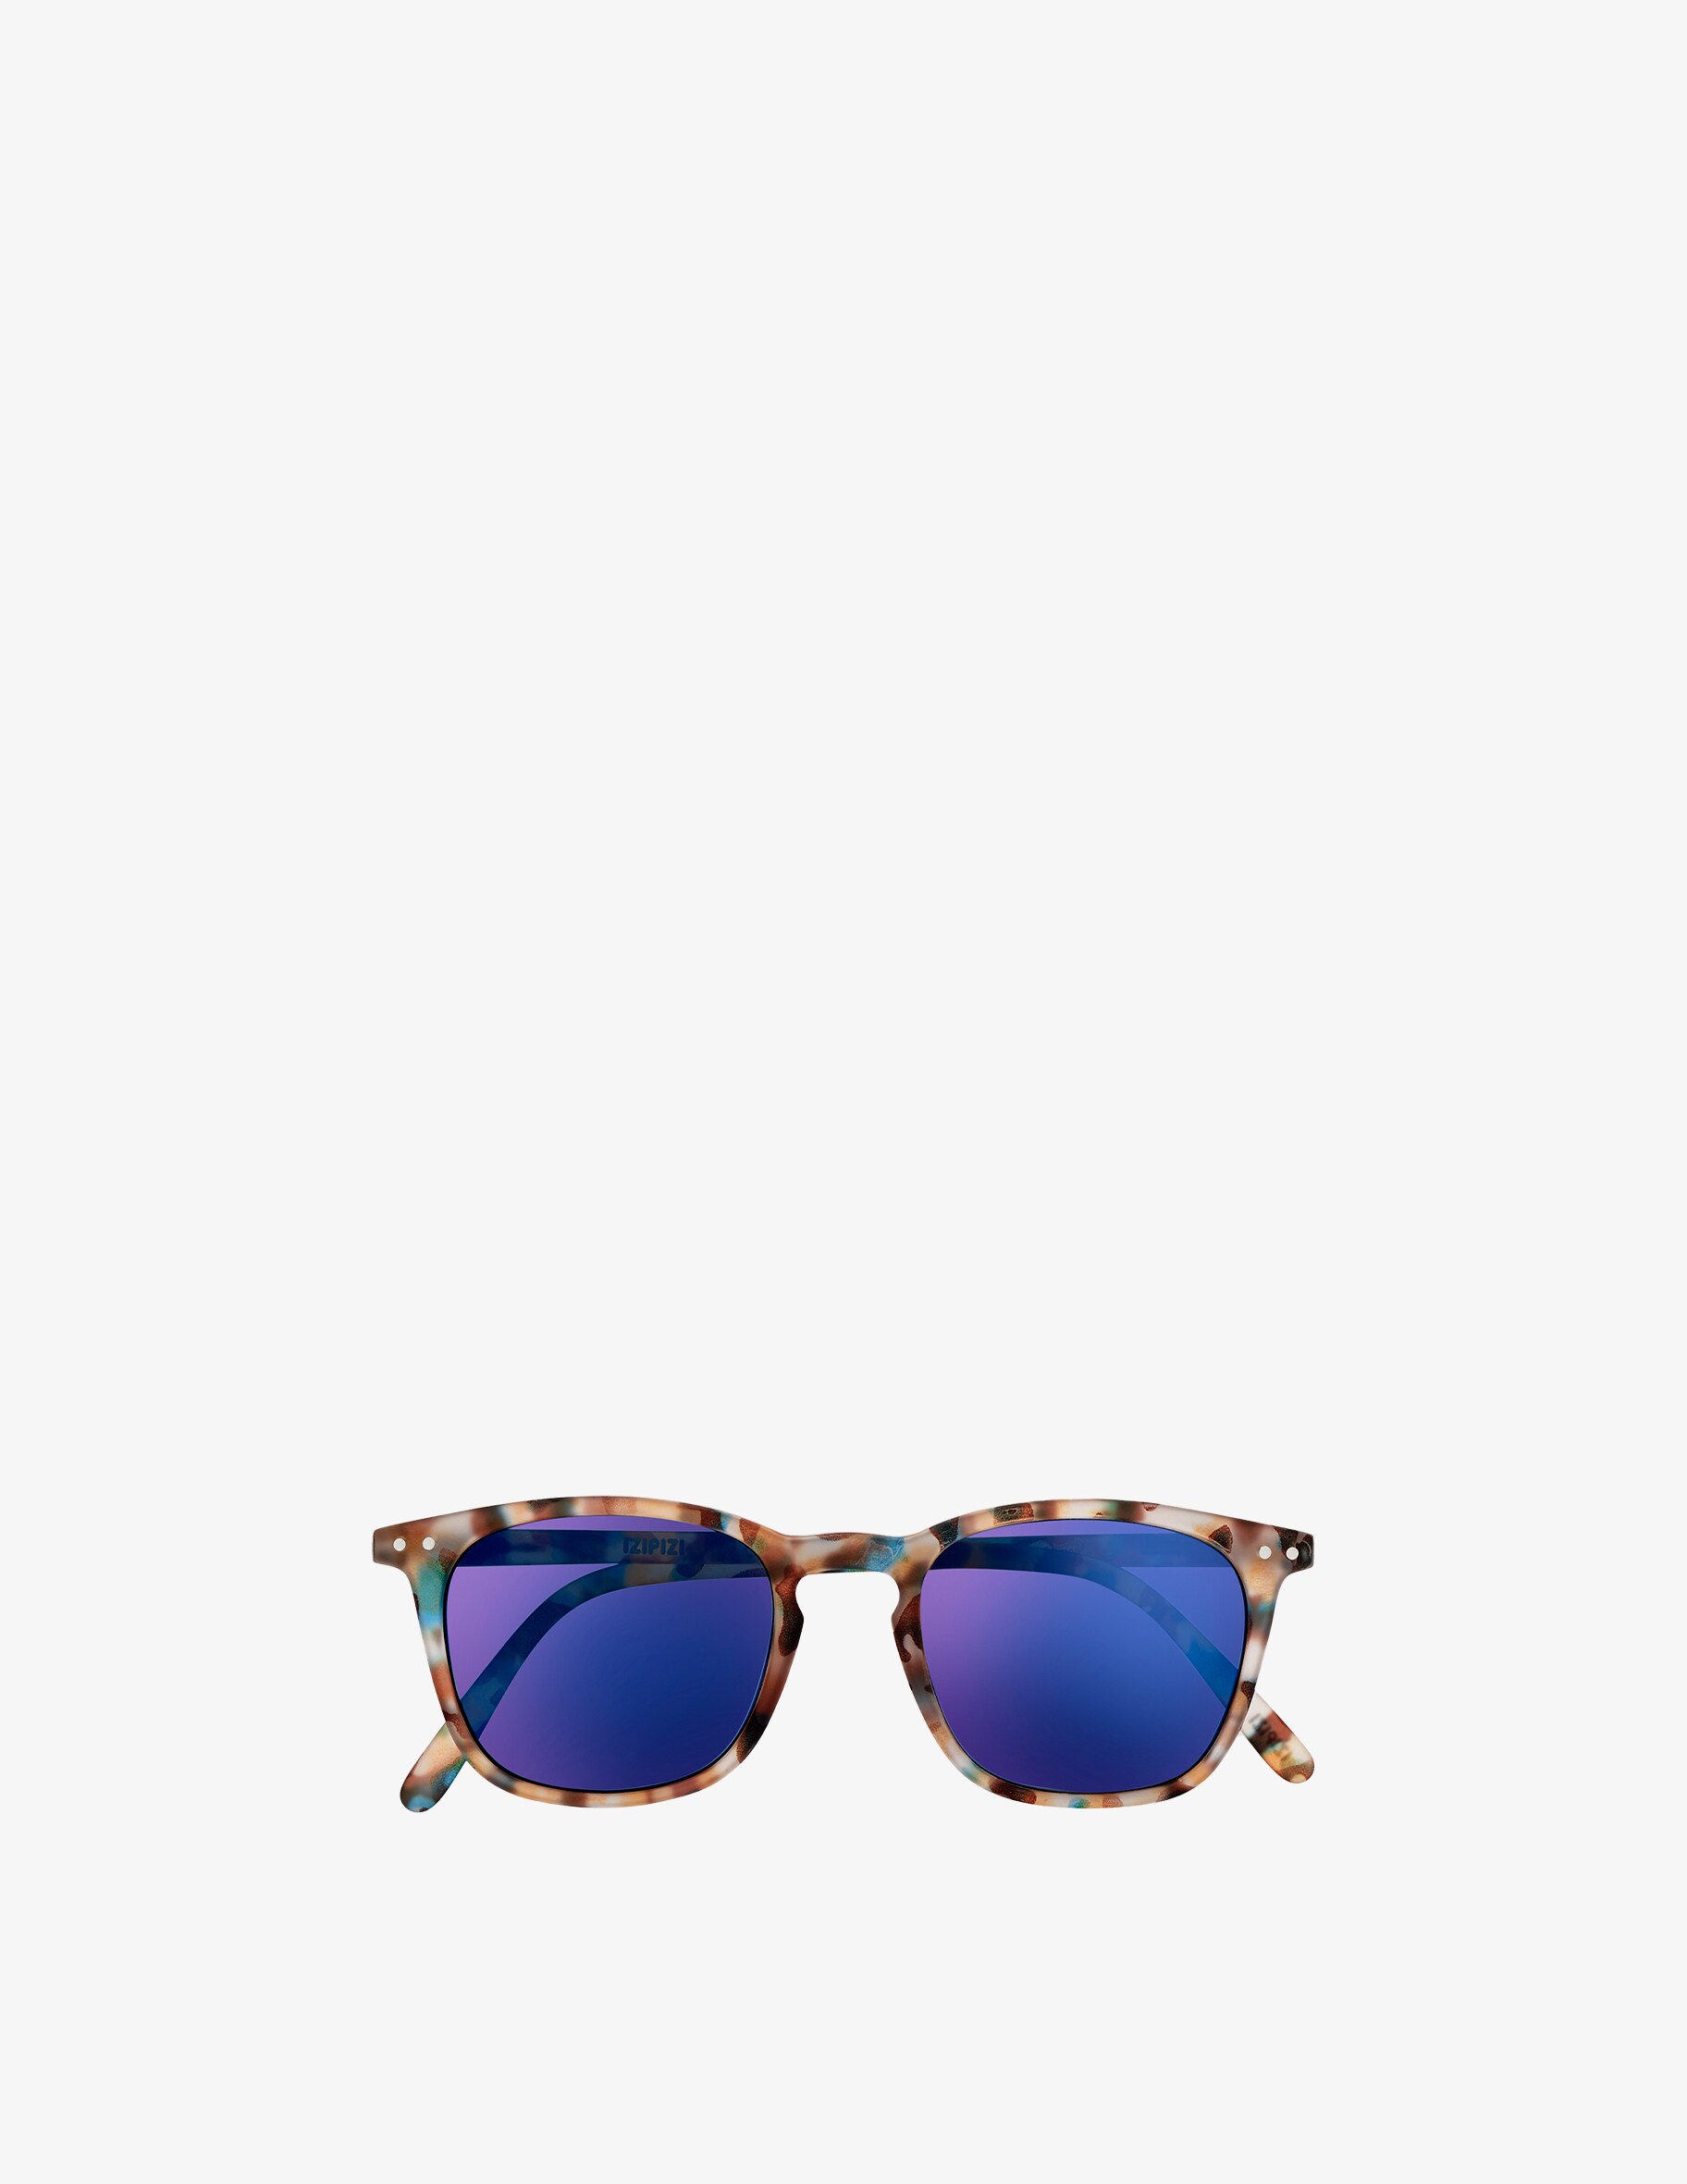 Солнцезащитные очки Модель #E с зеркальными линзами Izipizi, цвет Blue Tortoise